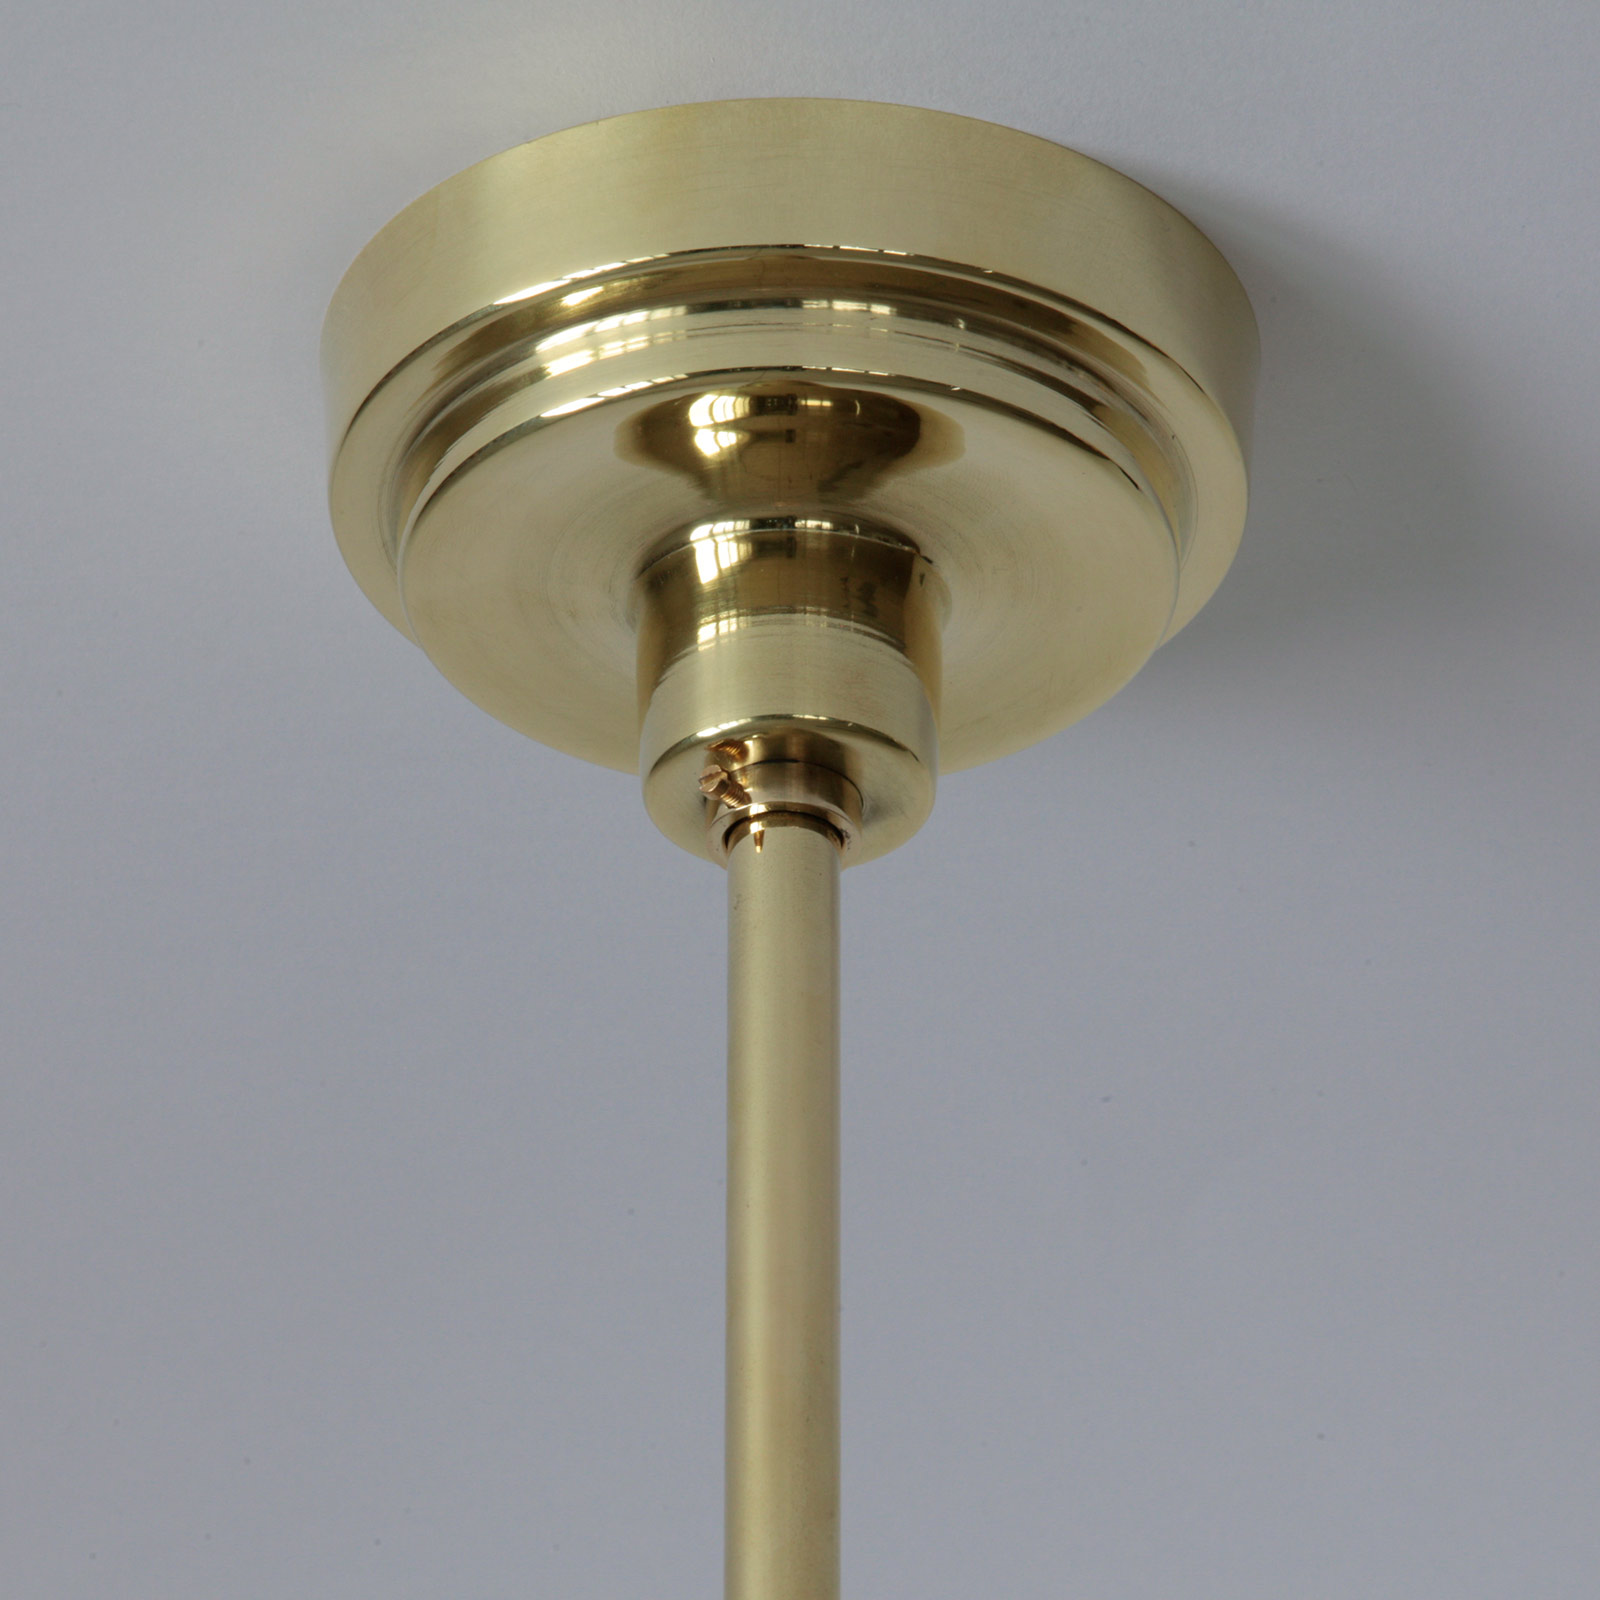 Stab-Pendelleuchte mit Kegelglas Ø 30 cm: Balachin (Ø 11 cm), hier in Messing poliert und lackiert